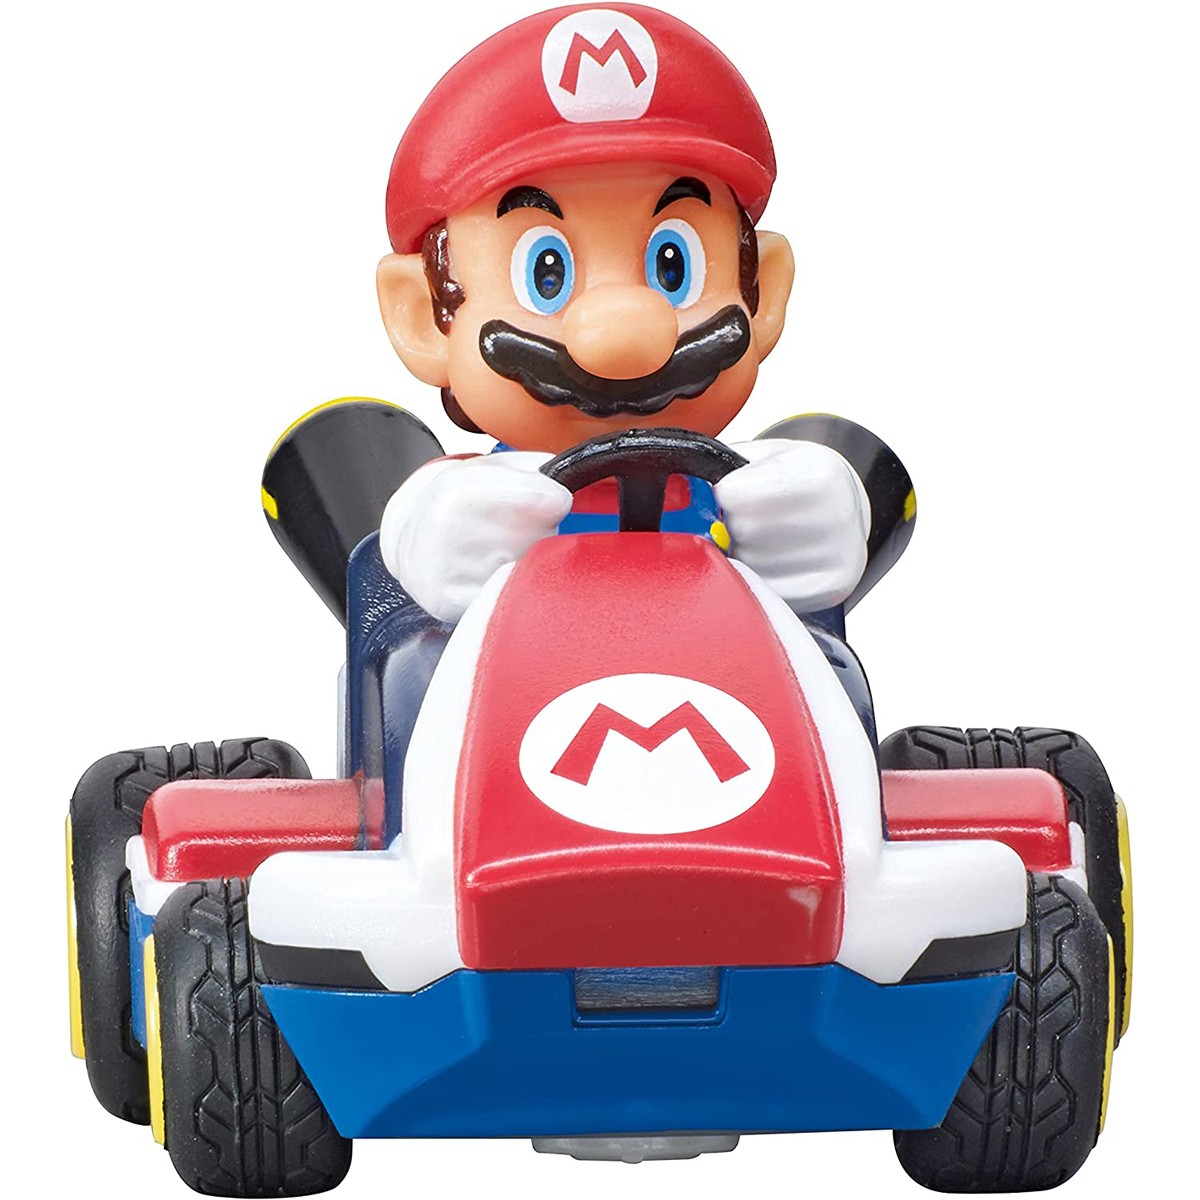 Voiture télécommandée : Luigi - Mario Kart Mini RC - Jeux et jouets Carrera  - Avenue des Jeux